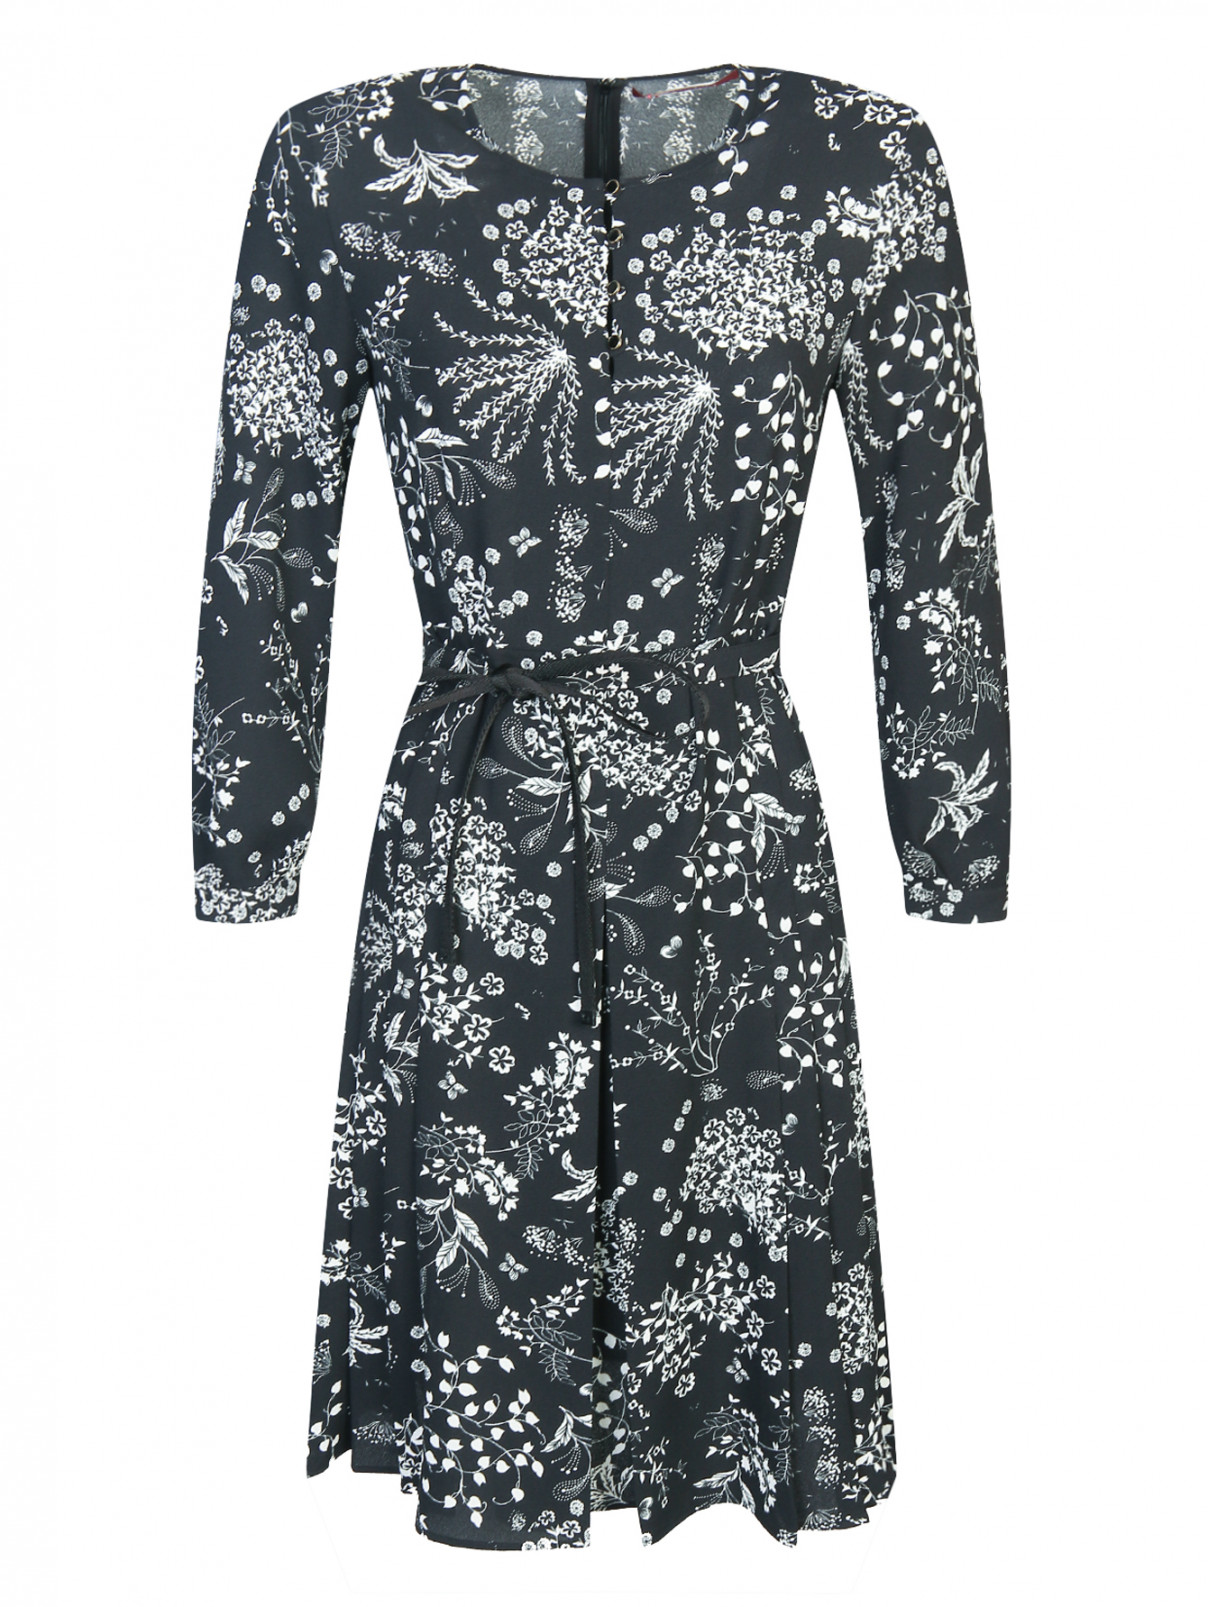 Платье-мини с узором под пояс Max Mara  –  Общий вид  – Цвет:  Черный